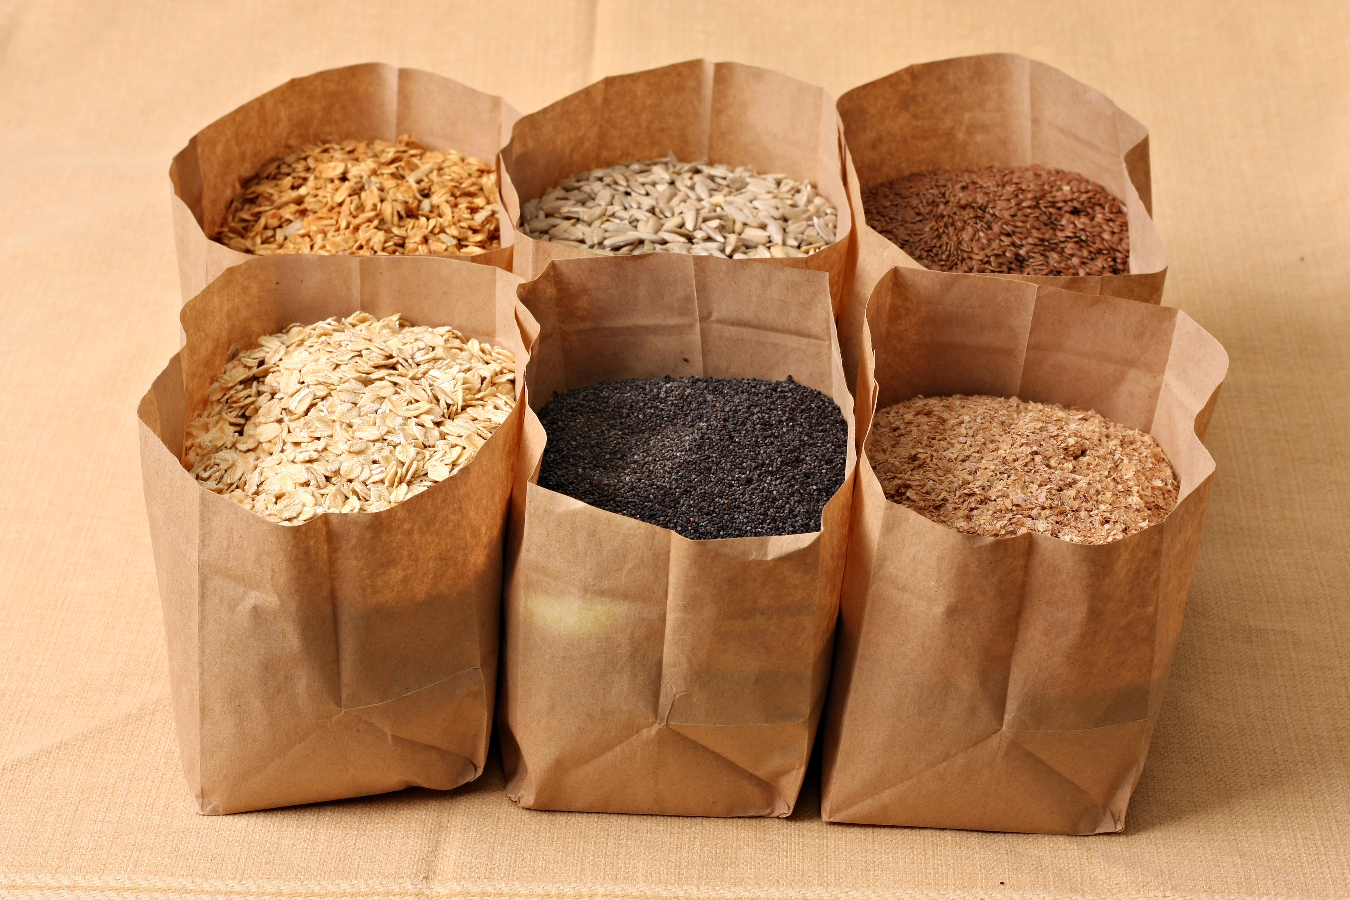 Ricos em fibras e nutrientes, os grãos integrais podem reduzir o risco de certos tipos de câncer